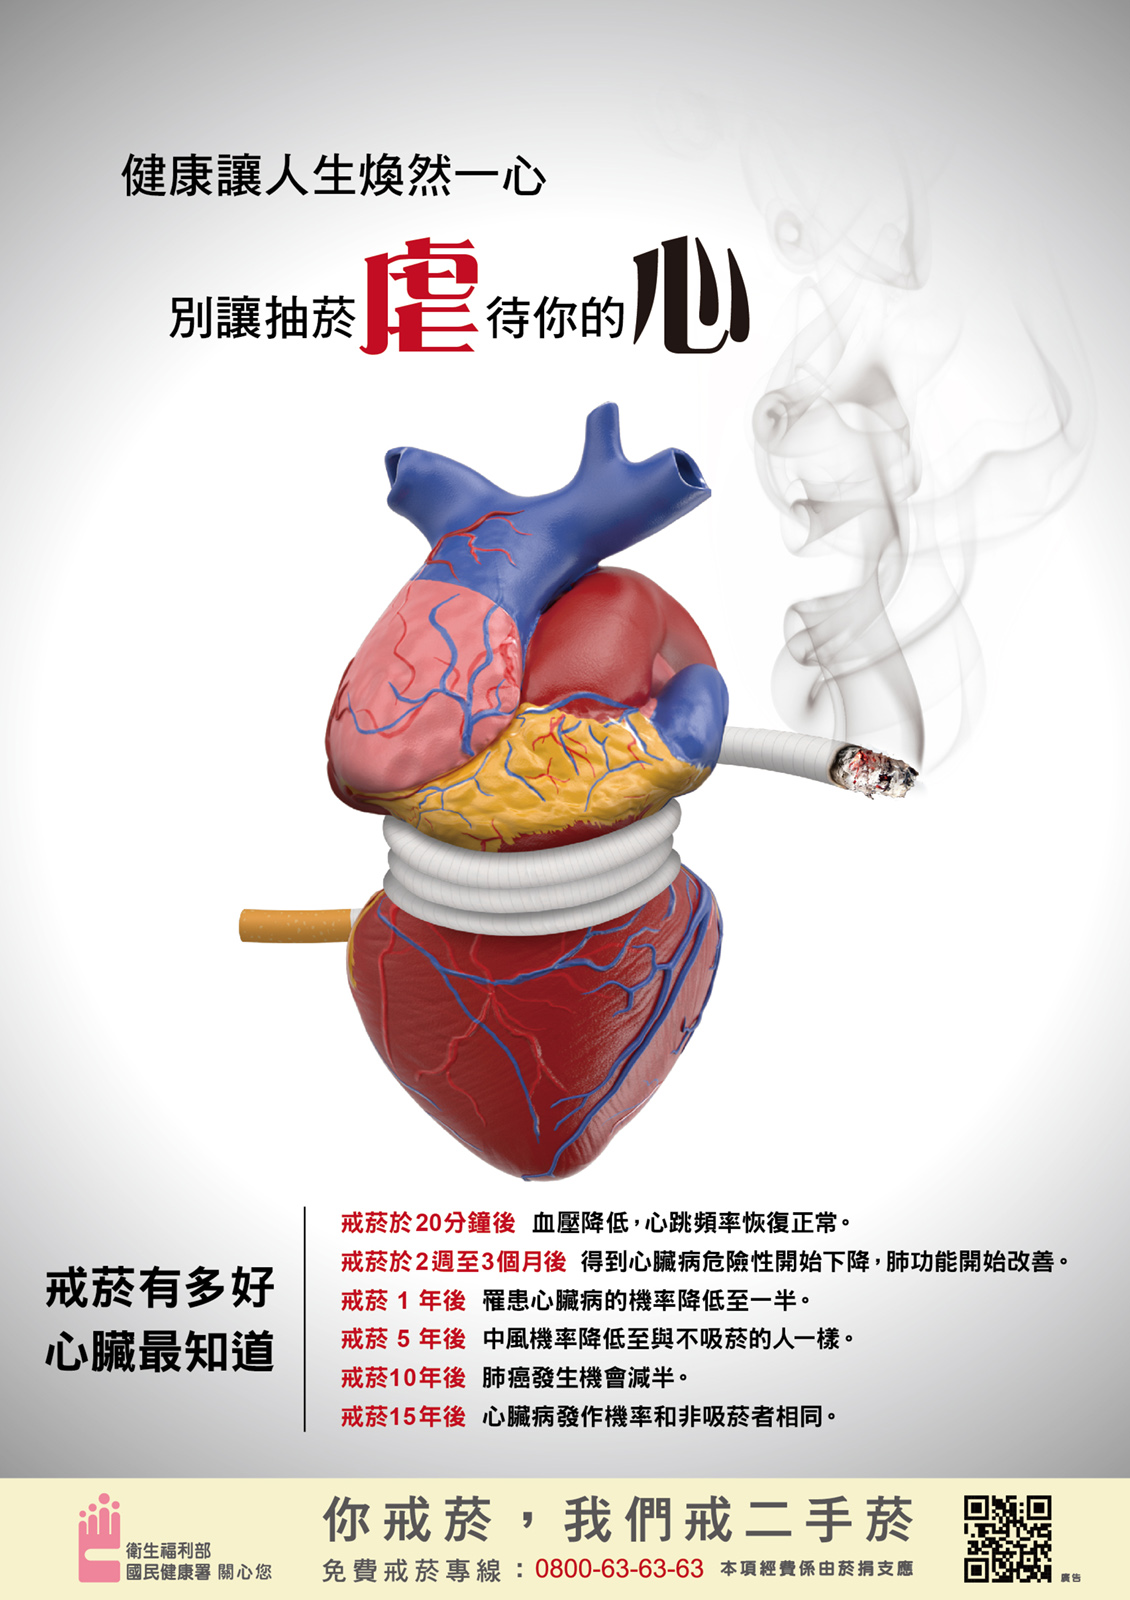 海報心臟篇：健康讓人生煥然一心  別讓抽菸虐待你的心文章照片